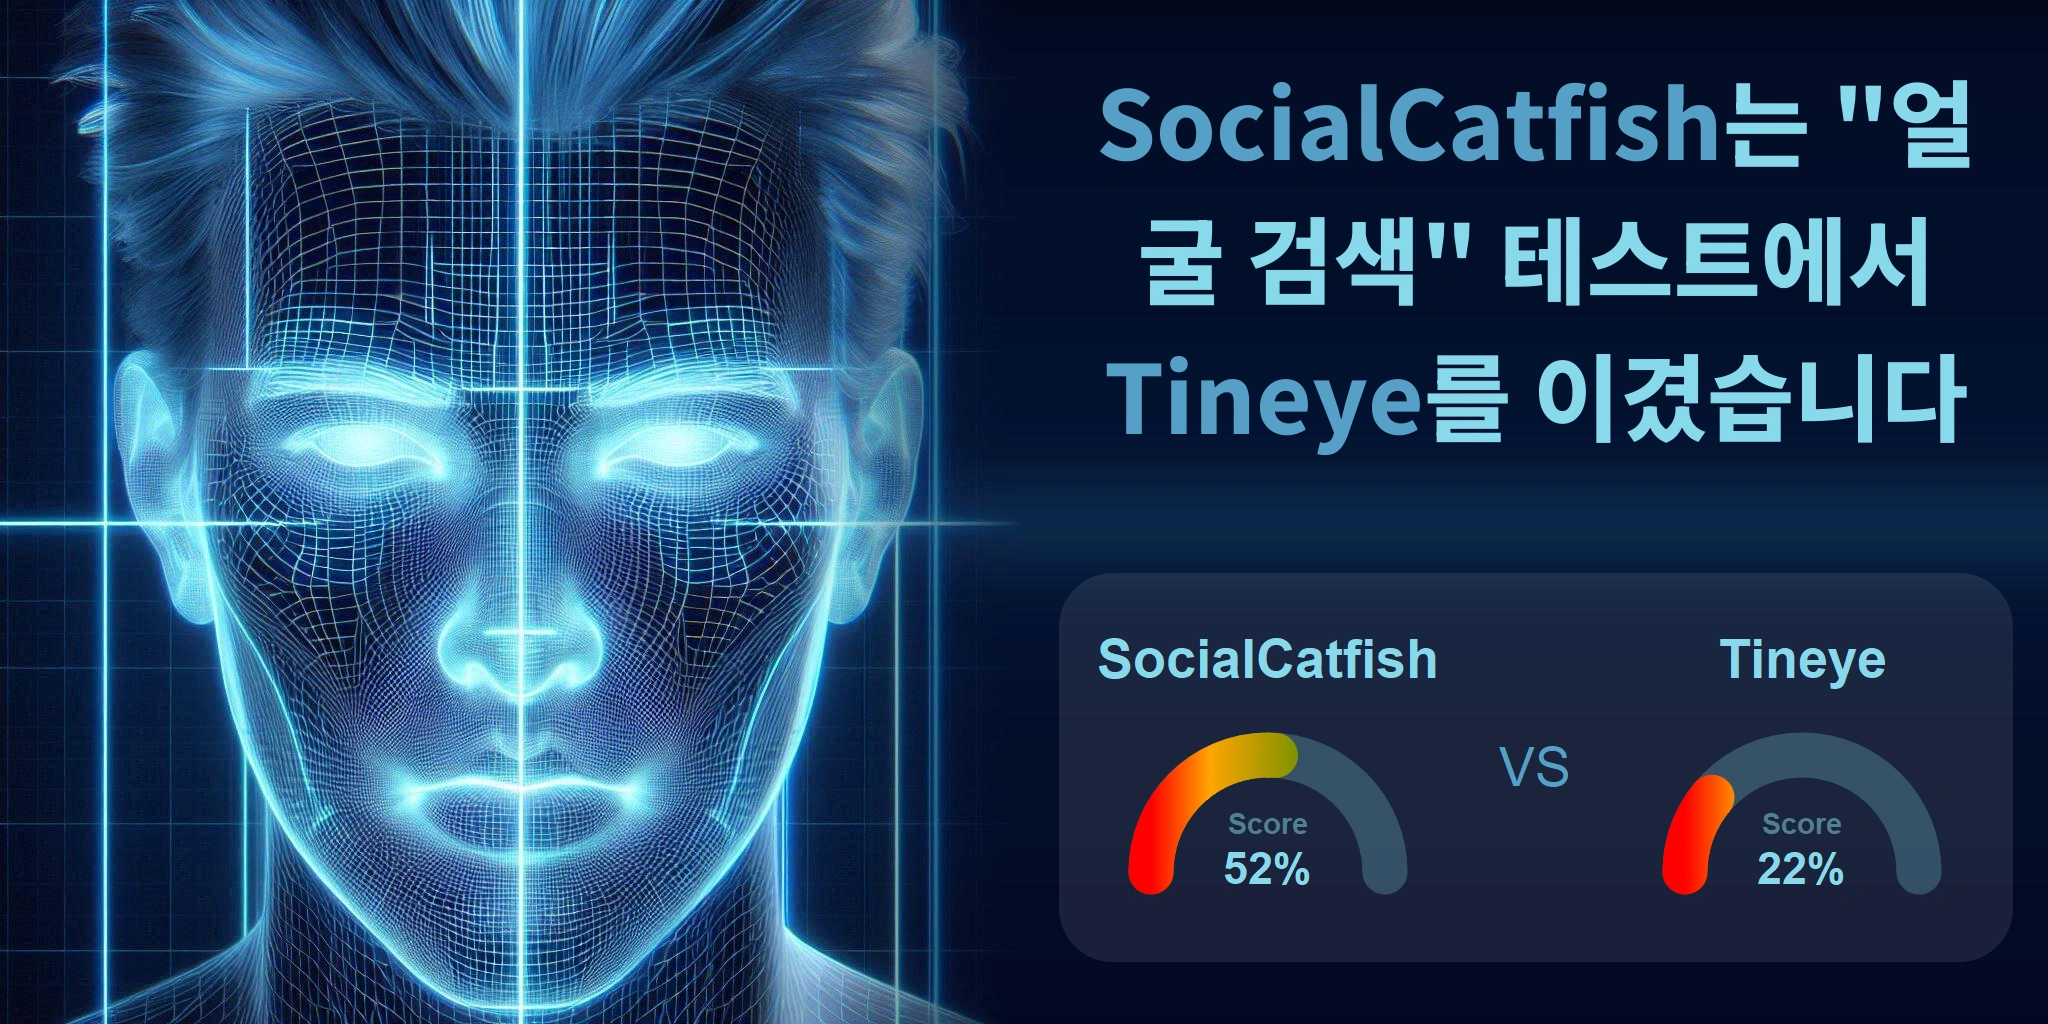 얼굴 검색에 더 좋은 것은 무엇입니까: <br>Tineye 또는 SocialCatfish?